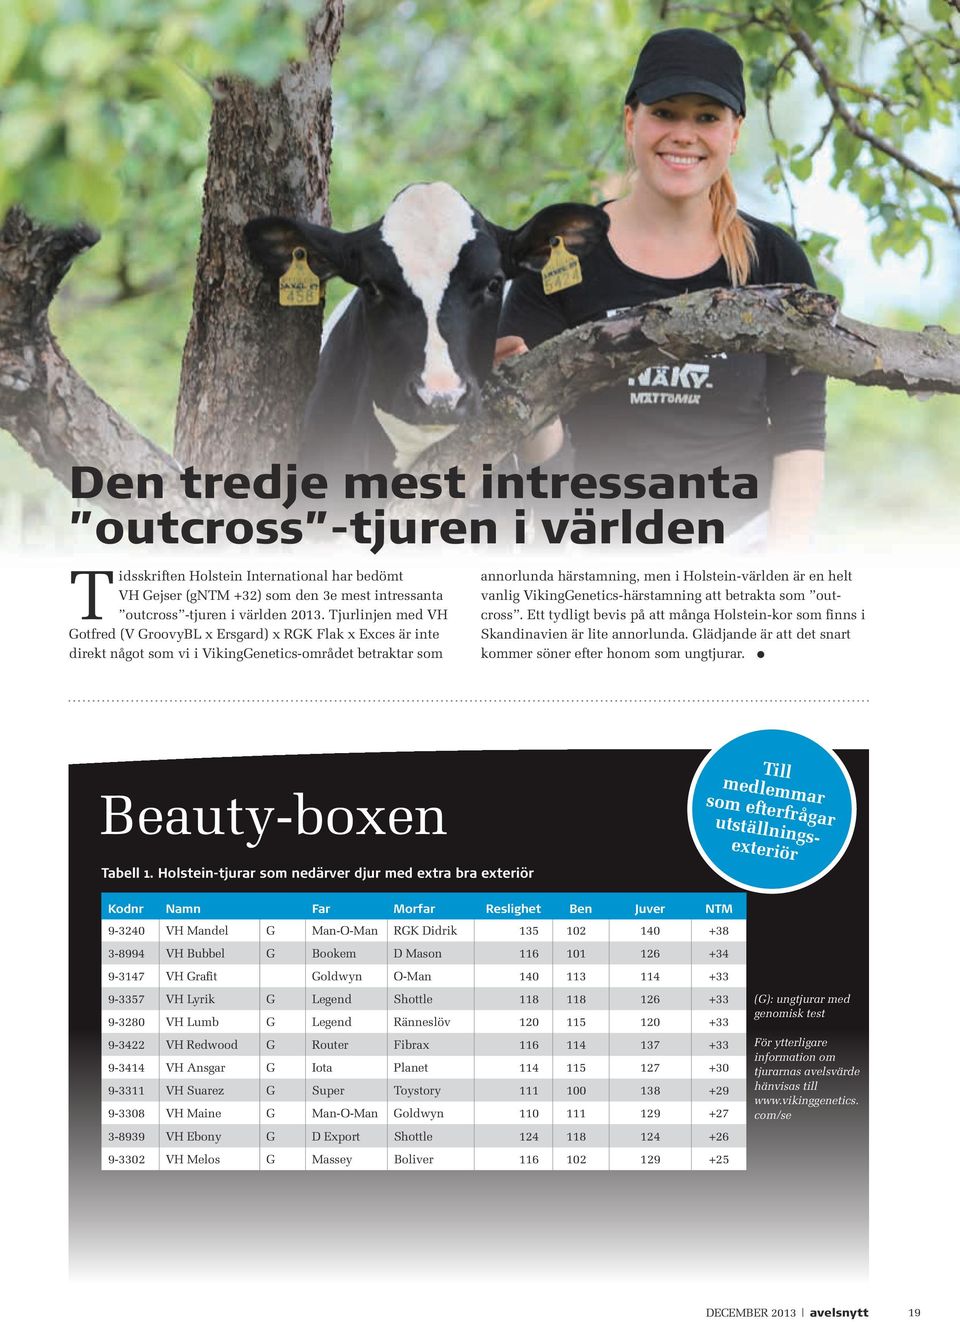 Vikinggenetics-härstamning att betrakta som outcross. Ett tydligt bevis på att många Holstein-kor som finns i skandinavien är lite annorlunda.